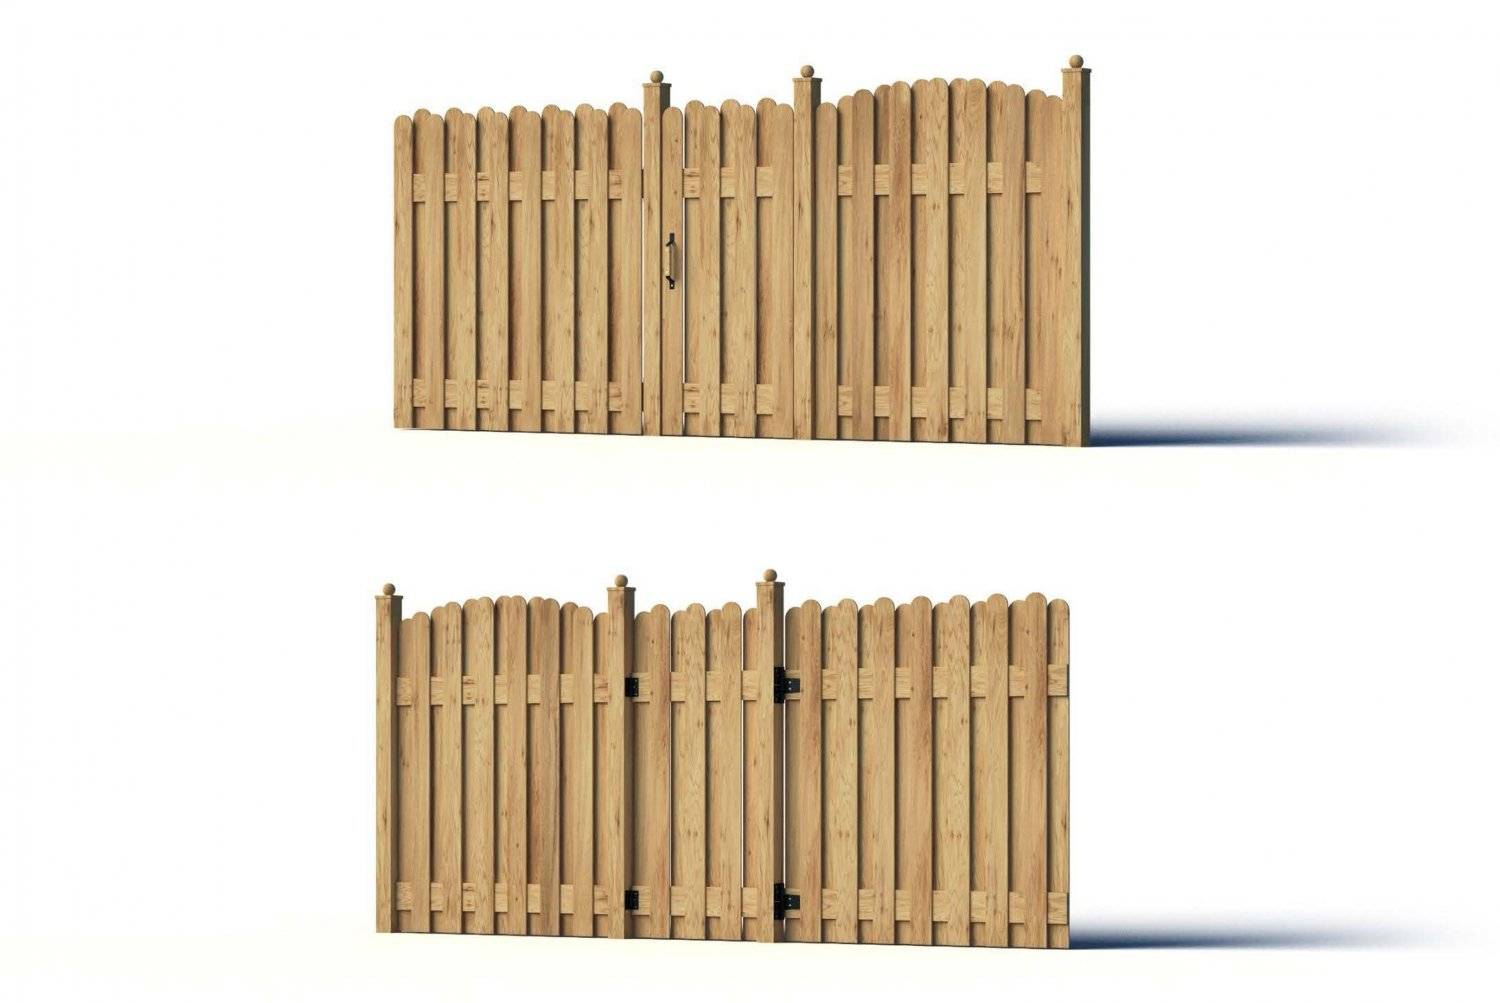 Выбираем забор для дачи: деревянный, металлический, каменный или растительный